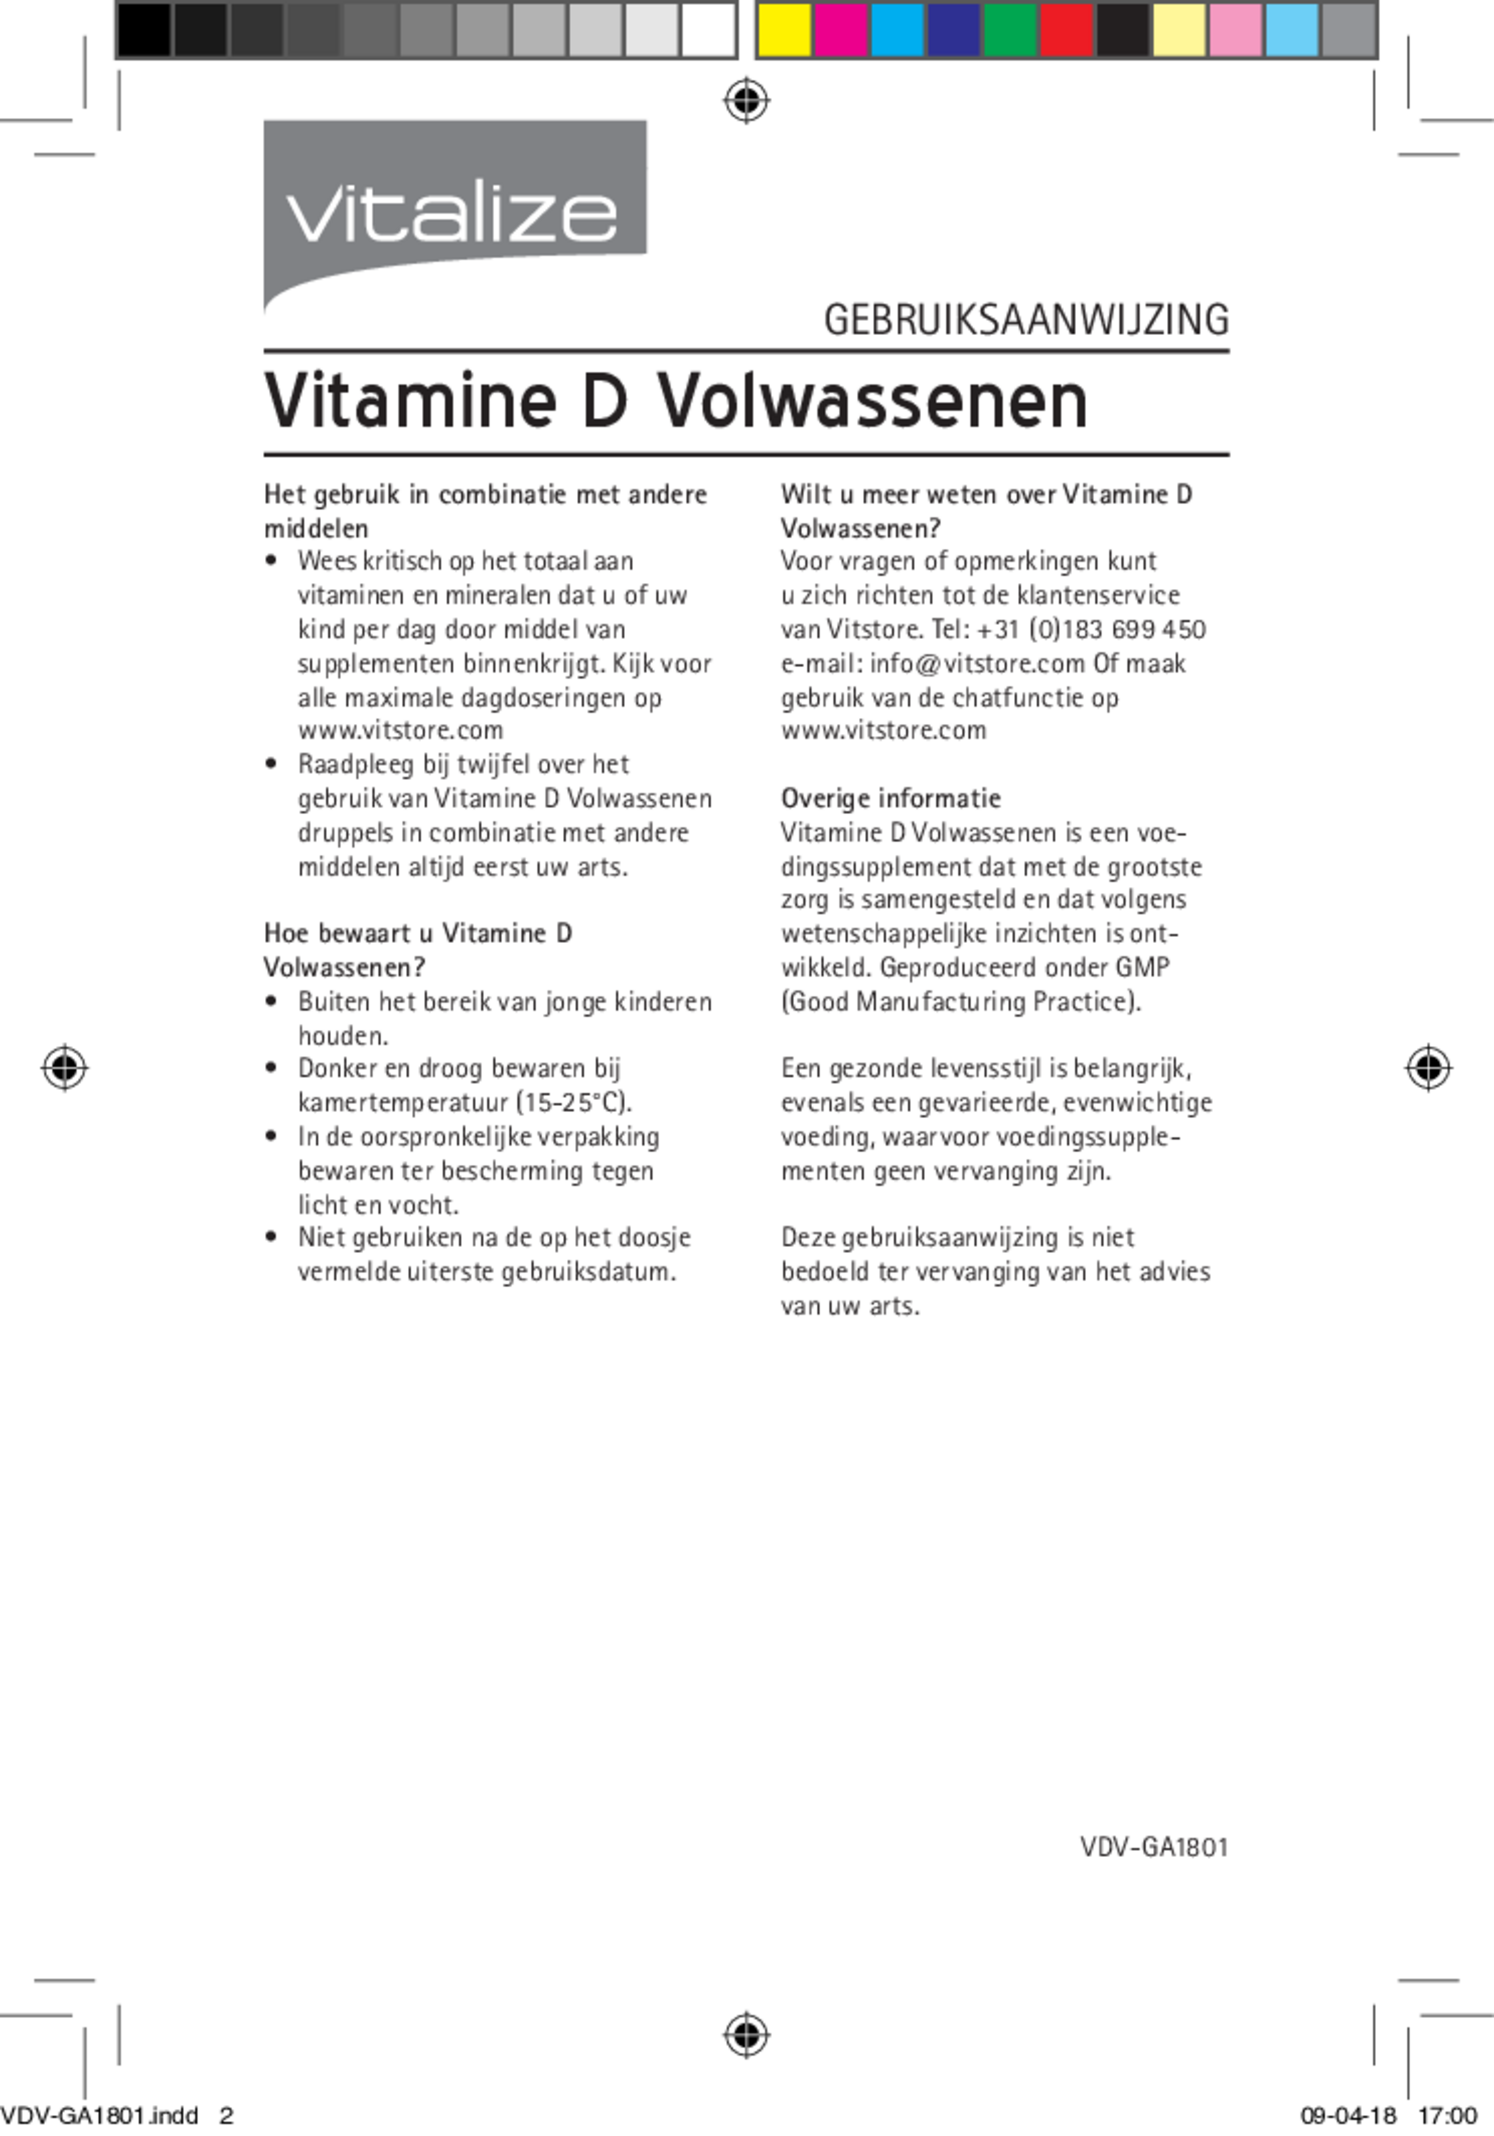 Vitamine D Druppels Volwassenen afbeelding van document #2, gebruiksaanwijzing